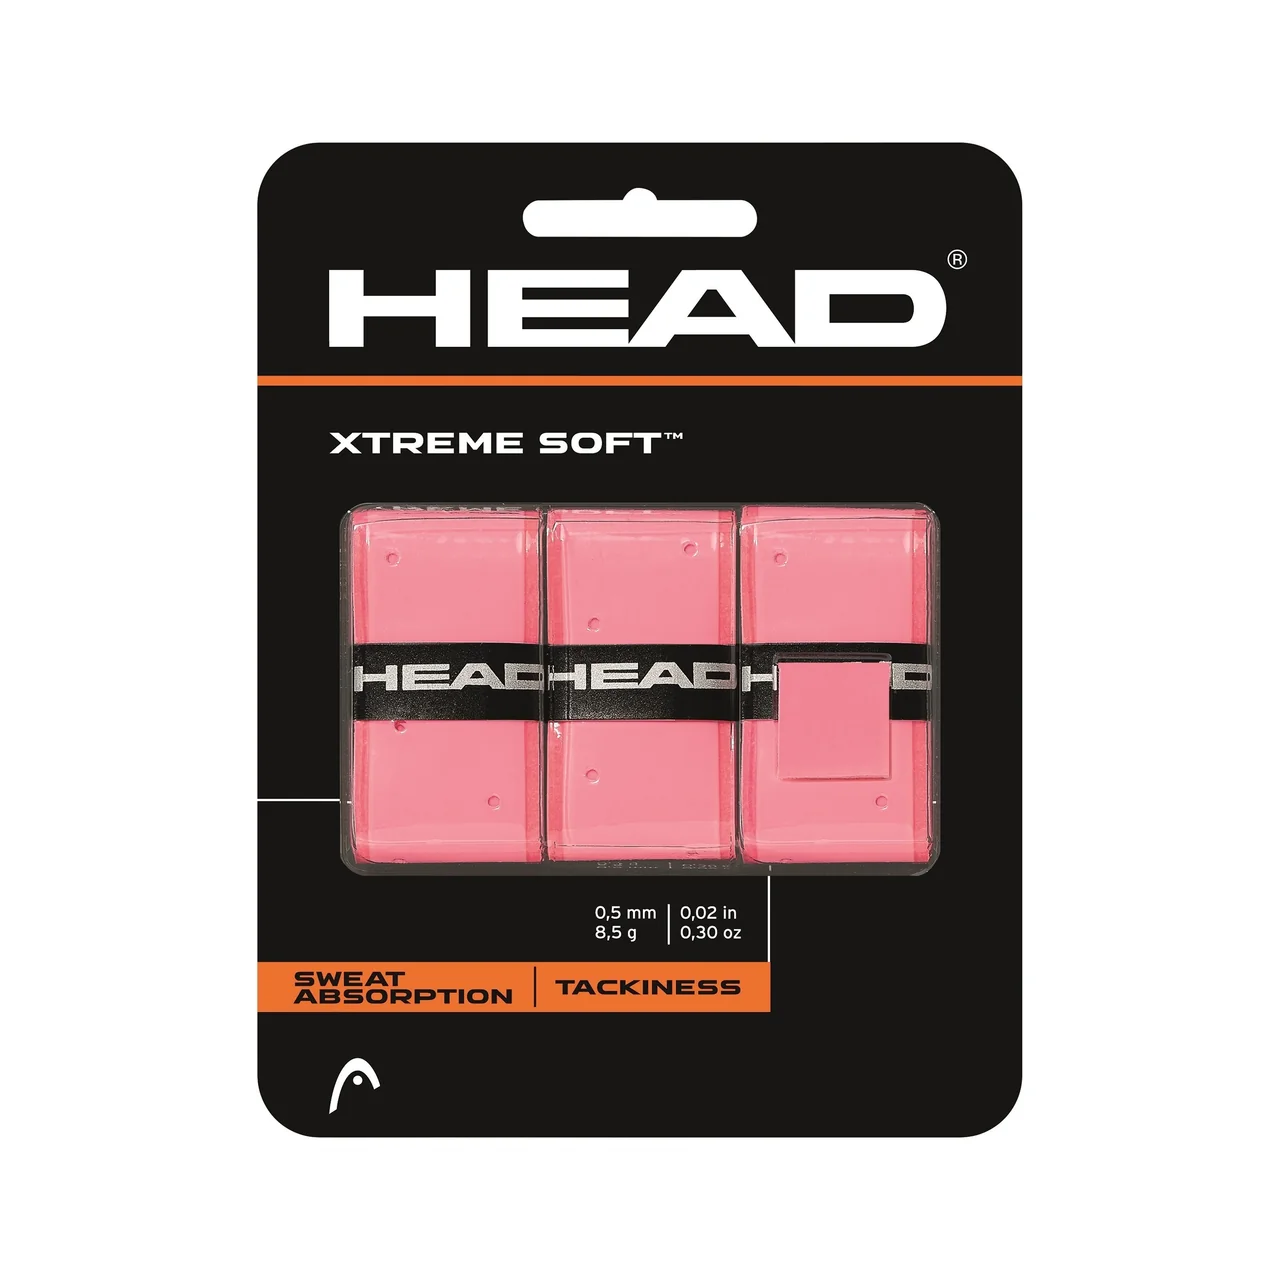 Head Xtreme Soft Pro Surgrip Rose